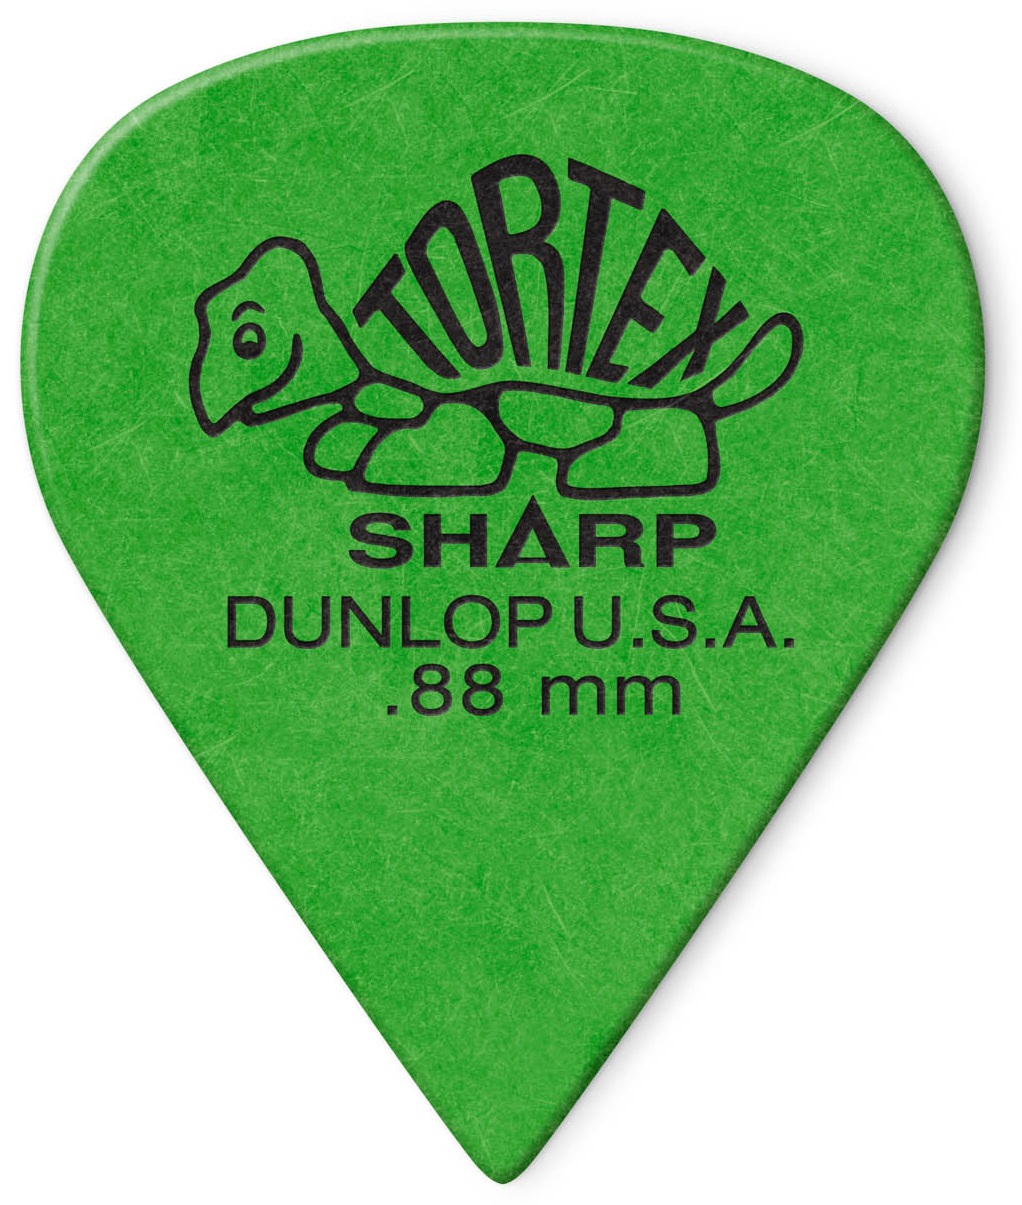 Dunlop Tortex Sharp 0.88